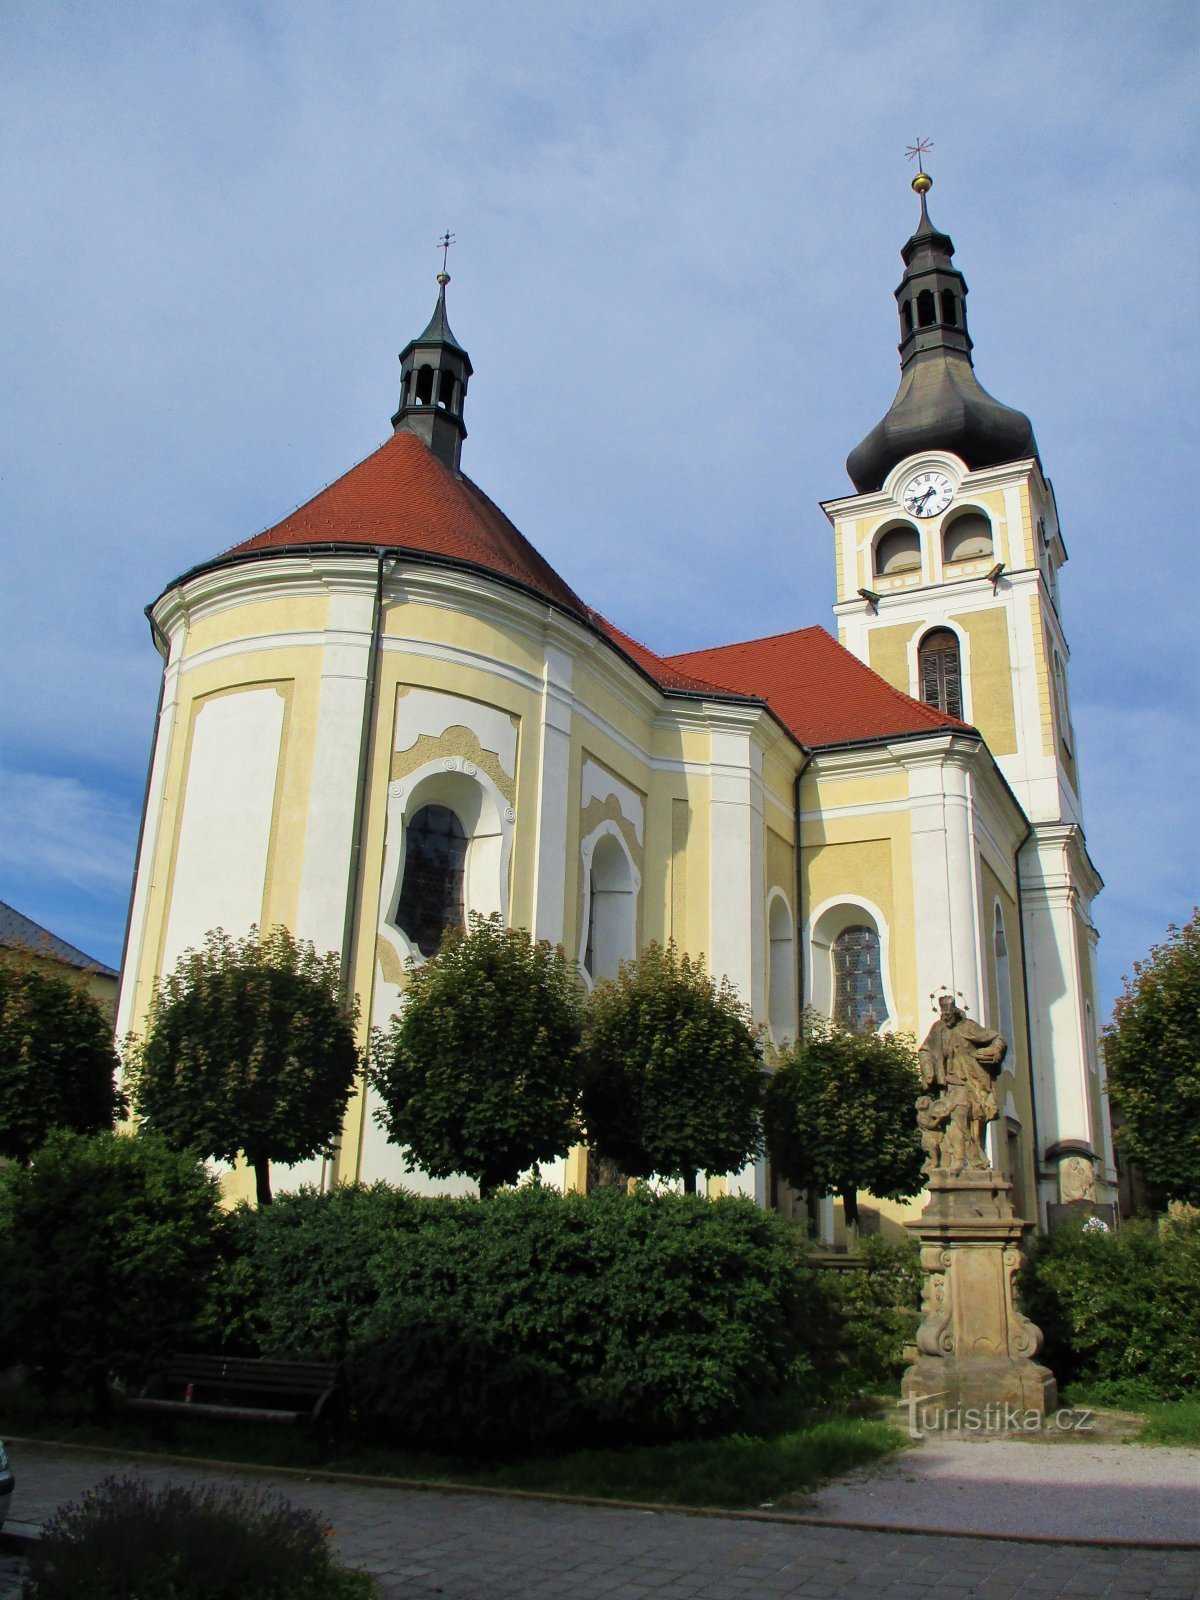 Kościół Narodzenia Najświętszej Marii Panny (Hořice, 26.7.2020)